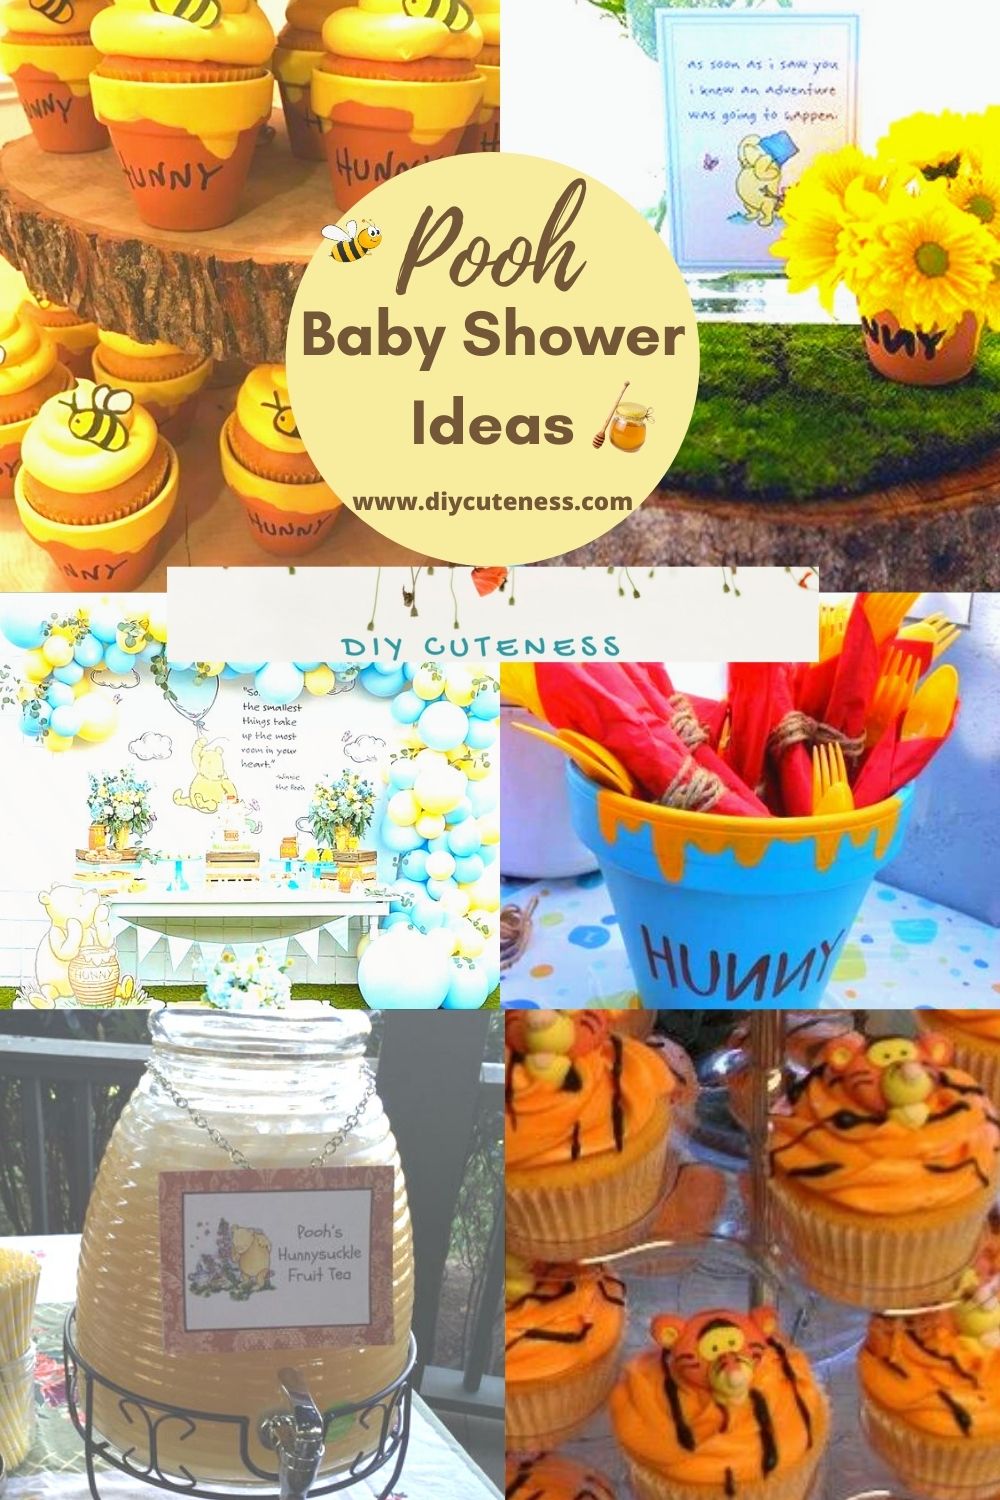 Winnie the Pooh Baby Shower Ideas